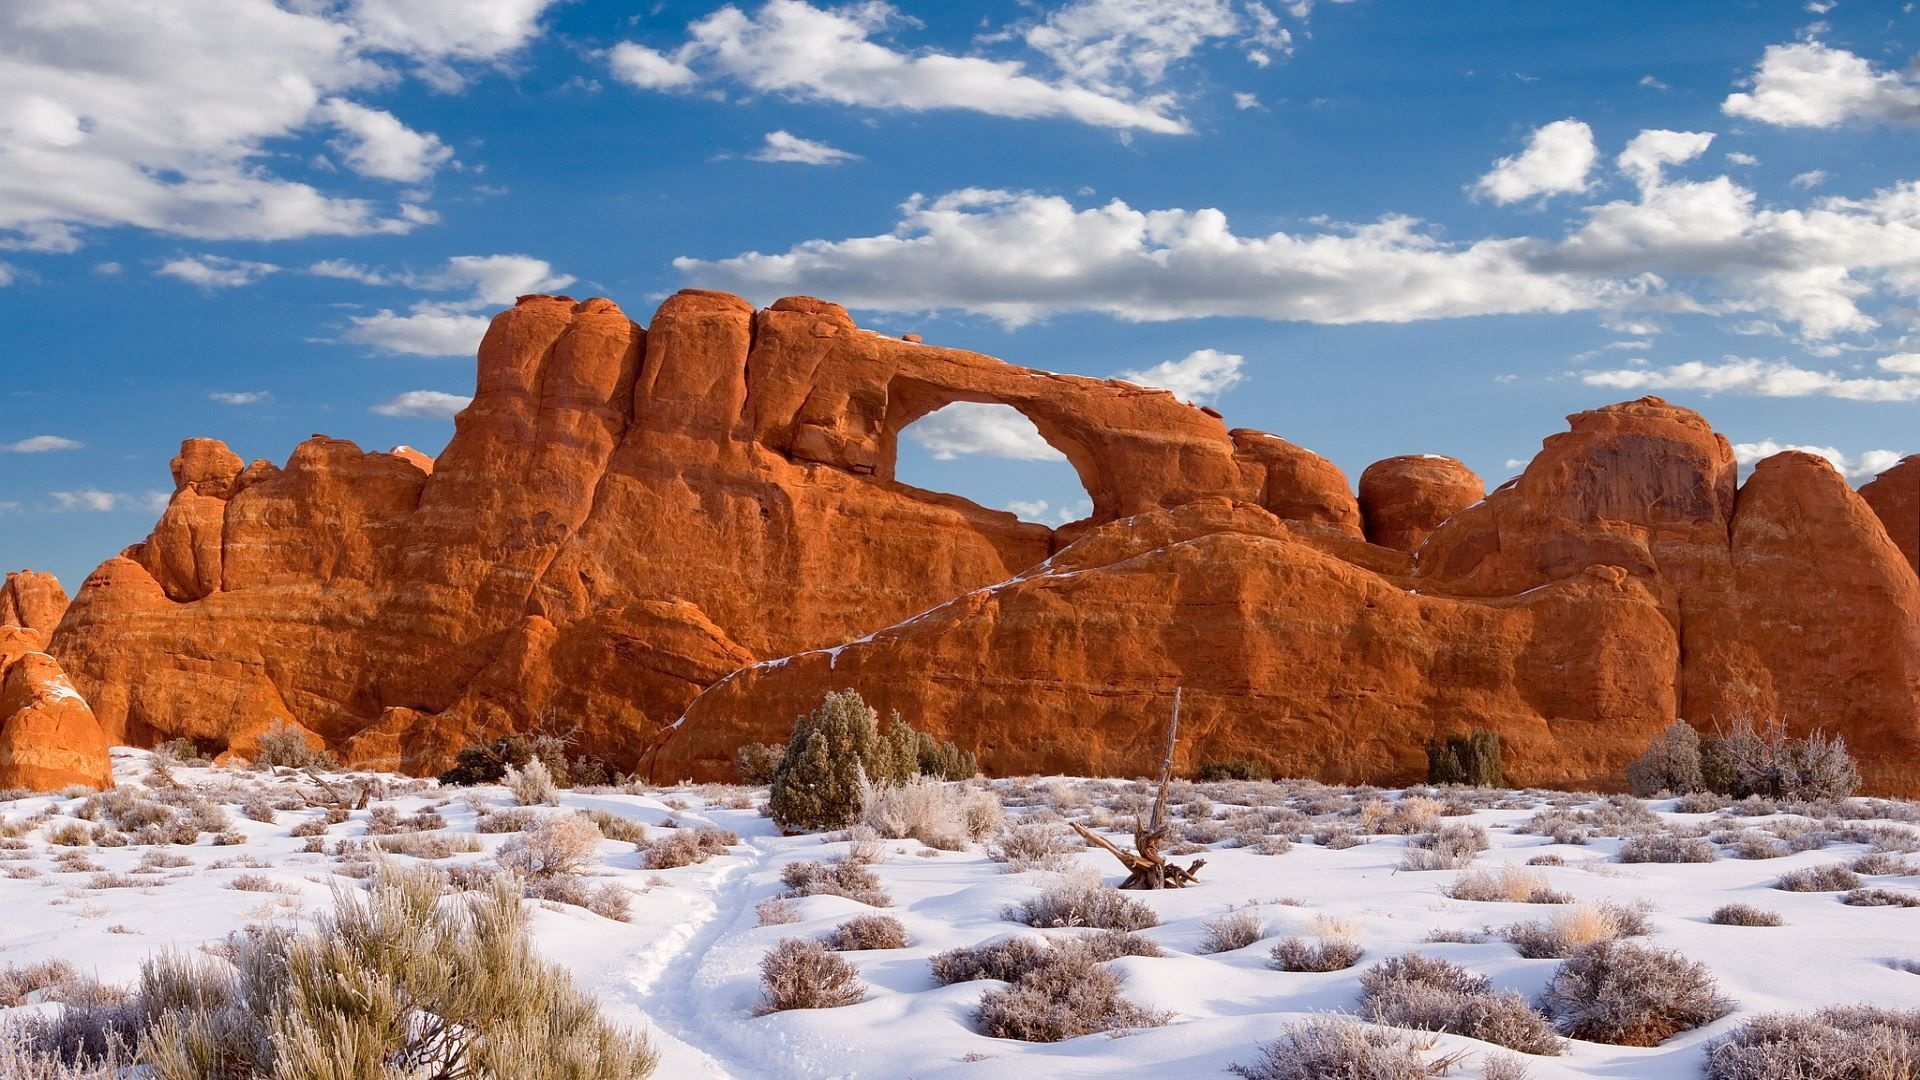 Snowy desert, Winter wonders, Utah's national park, Nature's art, 1920x1080 Full HD Desktop